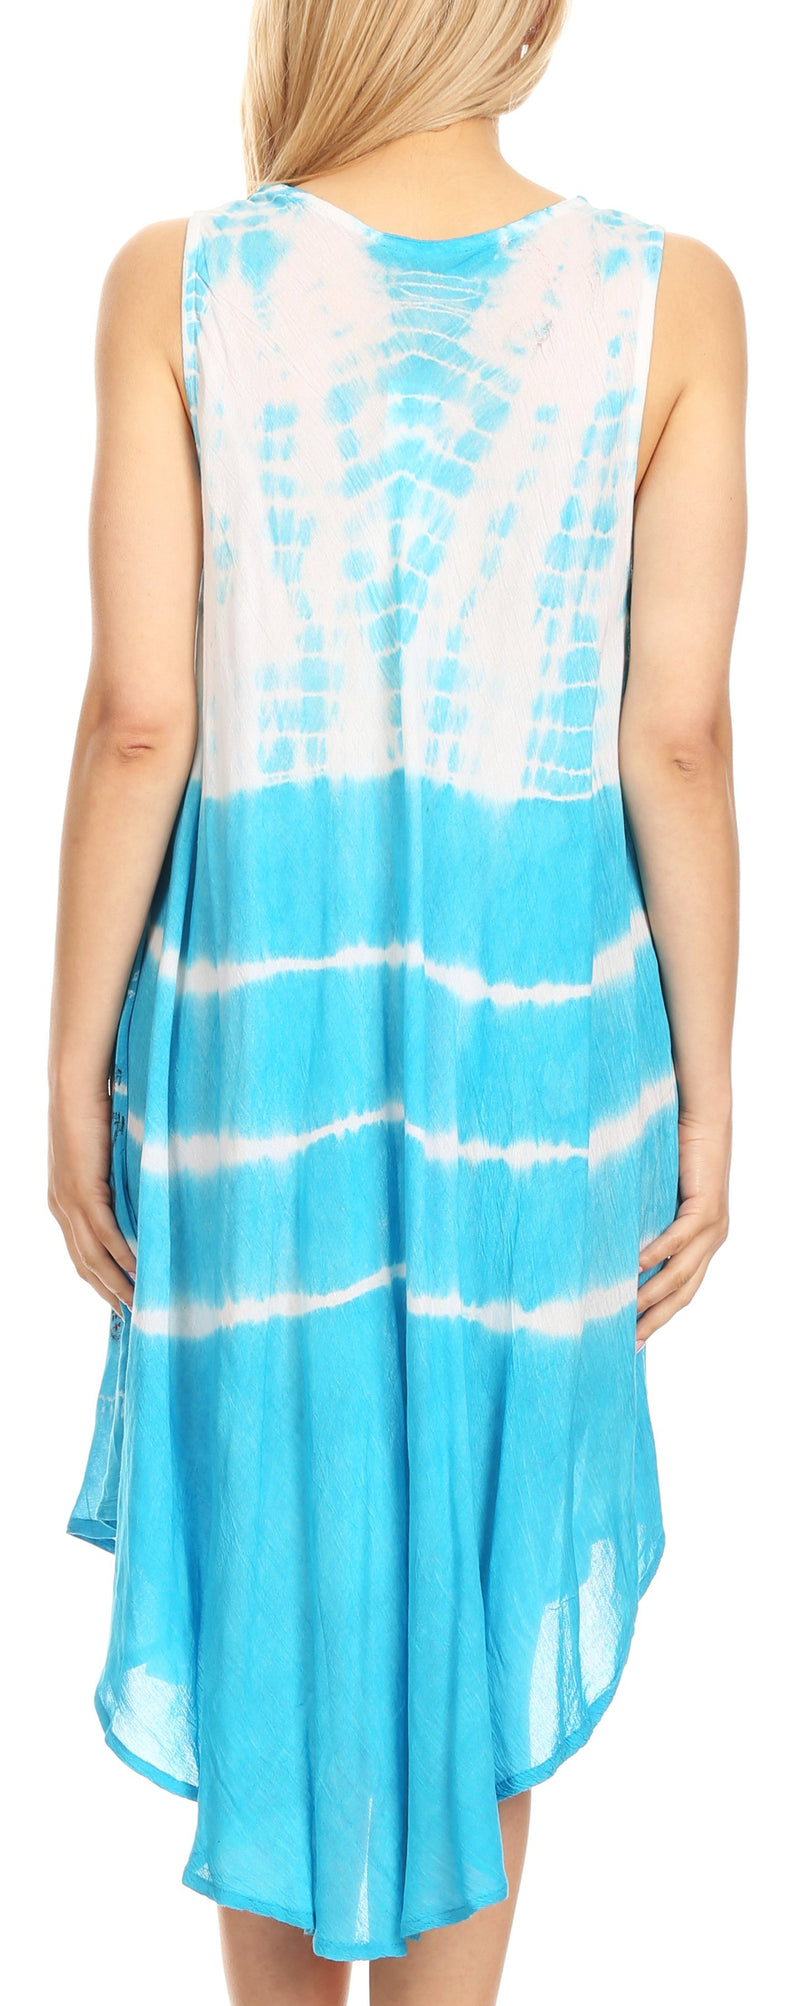 Sakkas Tina Women's Casual Summer Loose Sleeveless Tank Midi Dress Cover-up